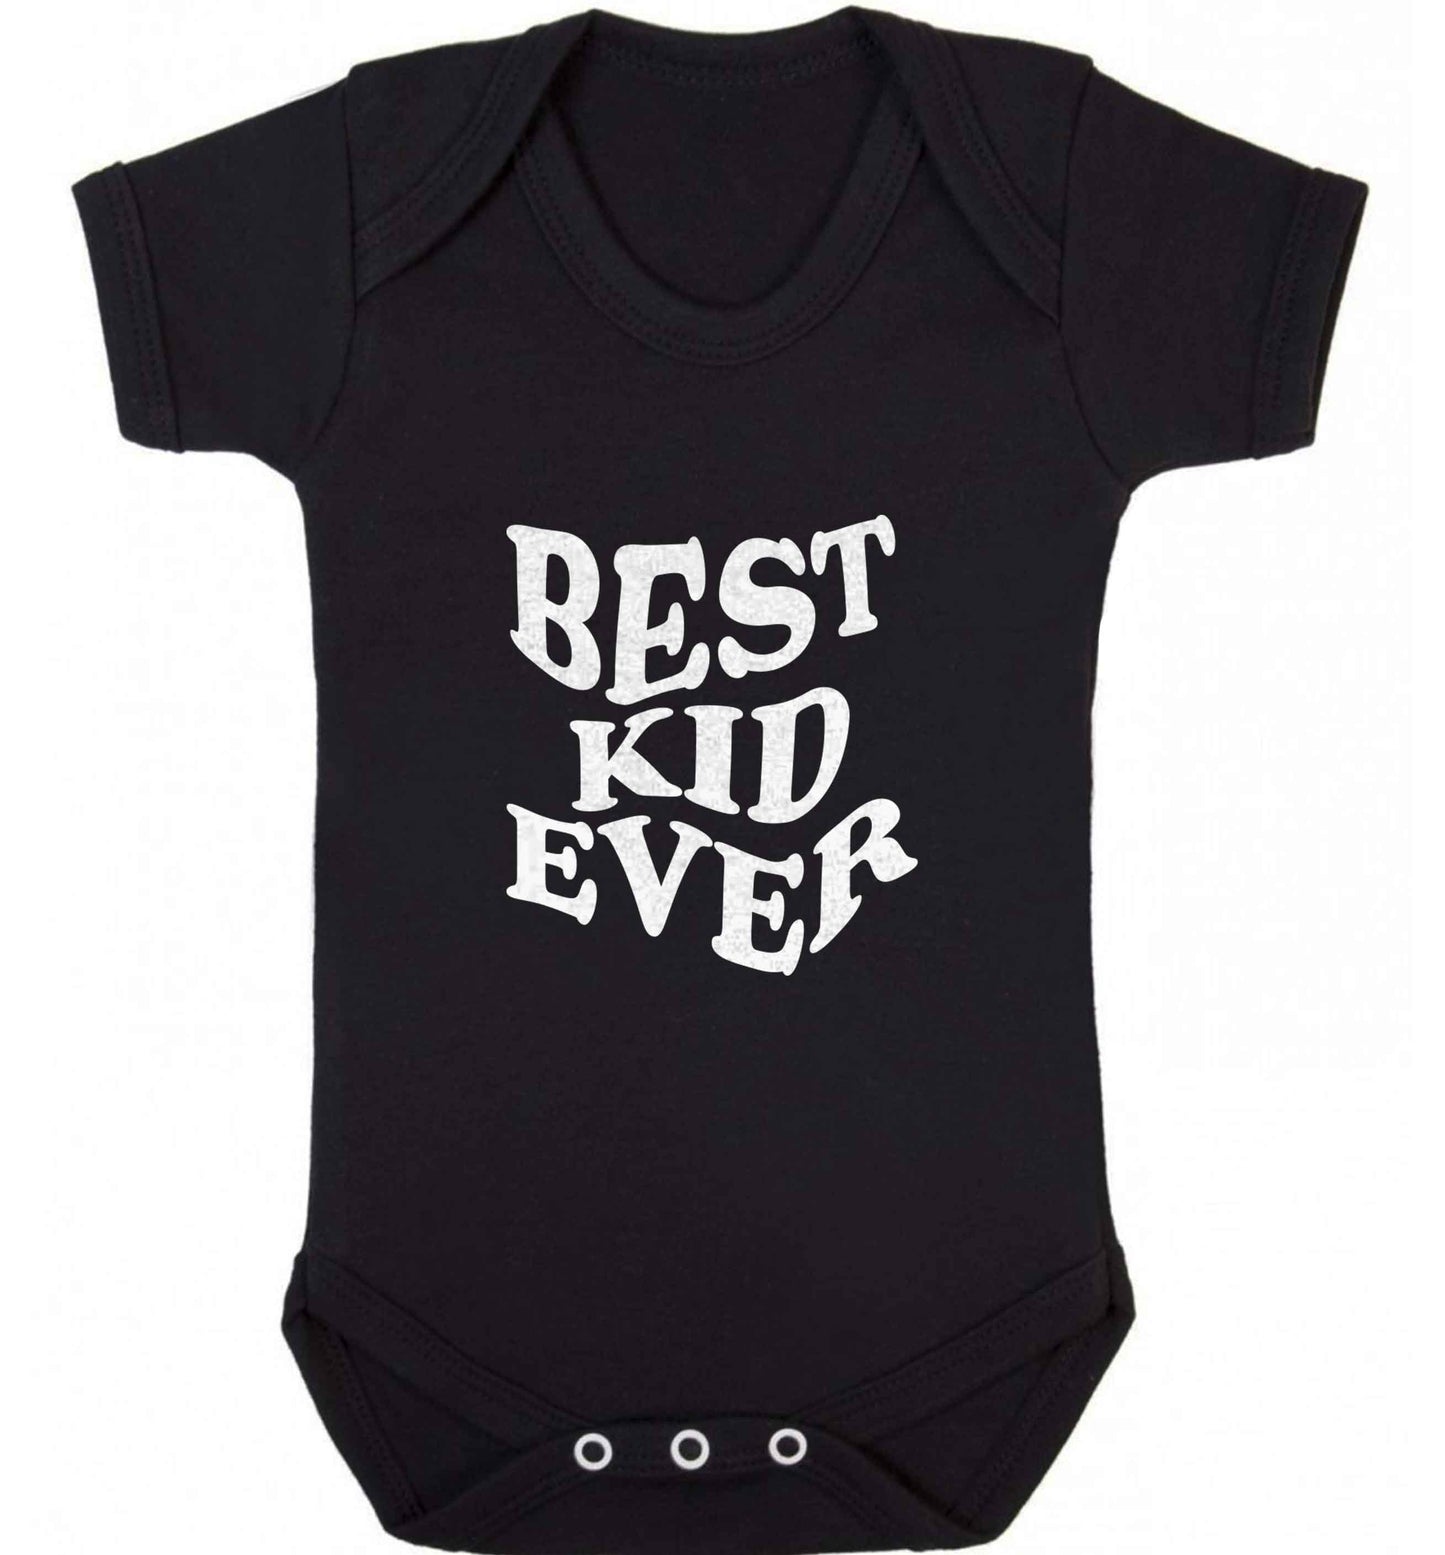 Best kid ever baby vest black 18-24 months